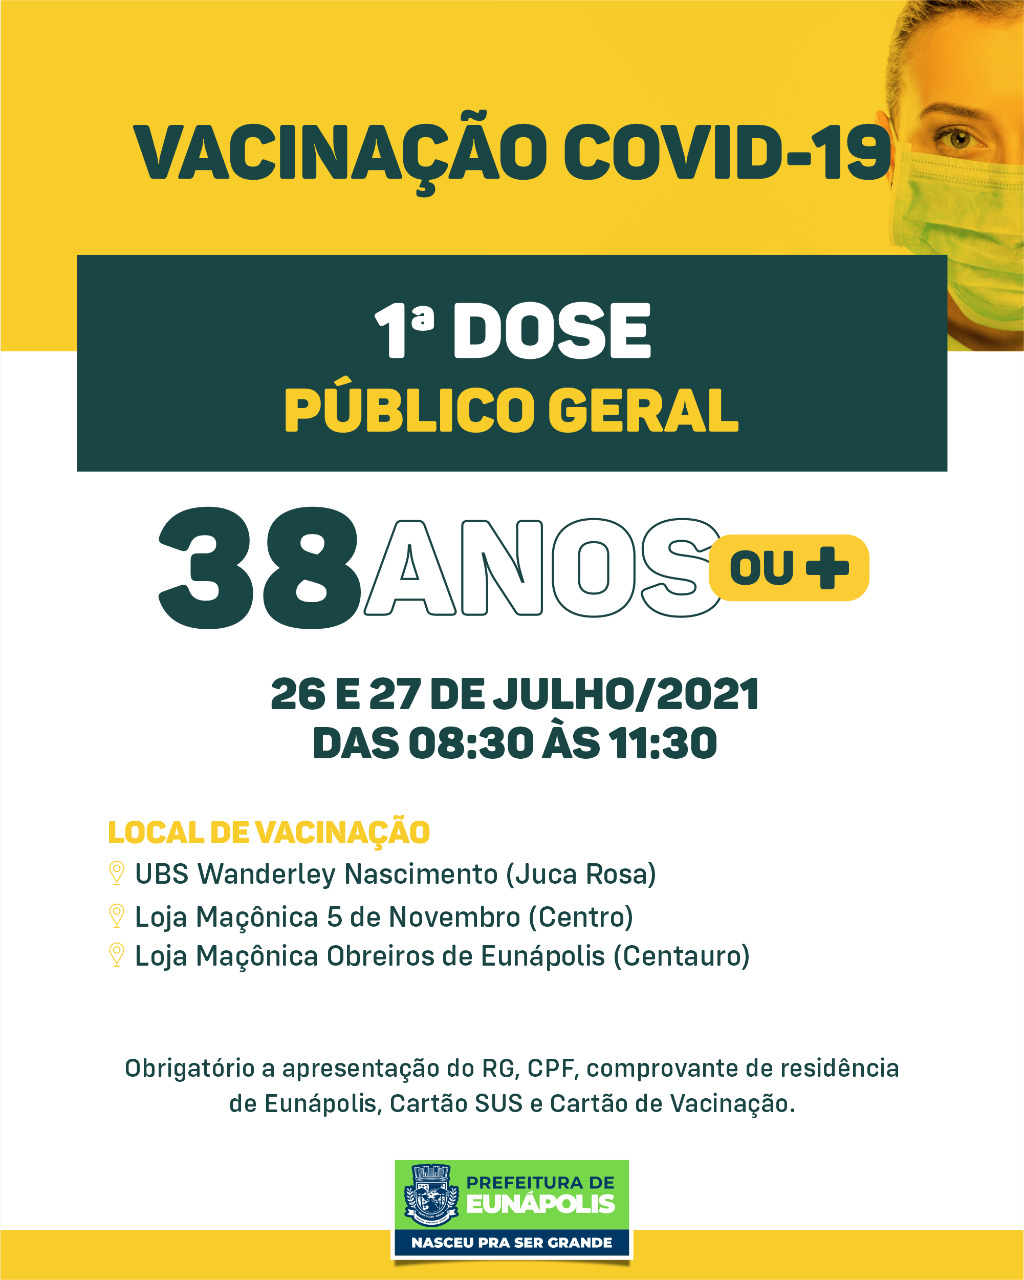 Eunápolis: Cronograma de vacinação contra à Covid-19: 26 a 30 de Julho/2021 9